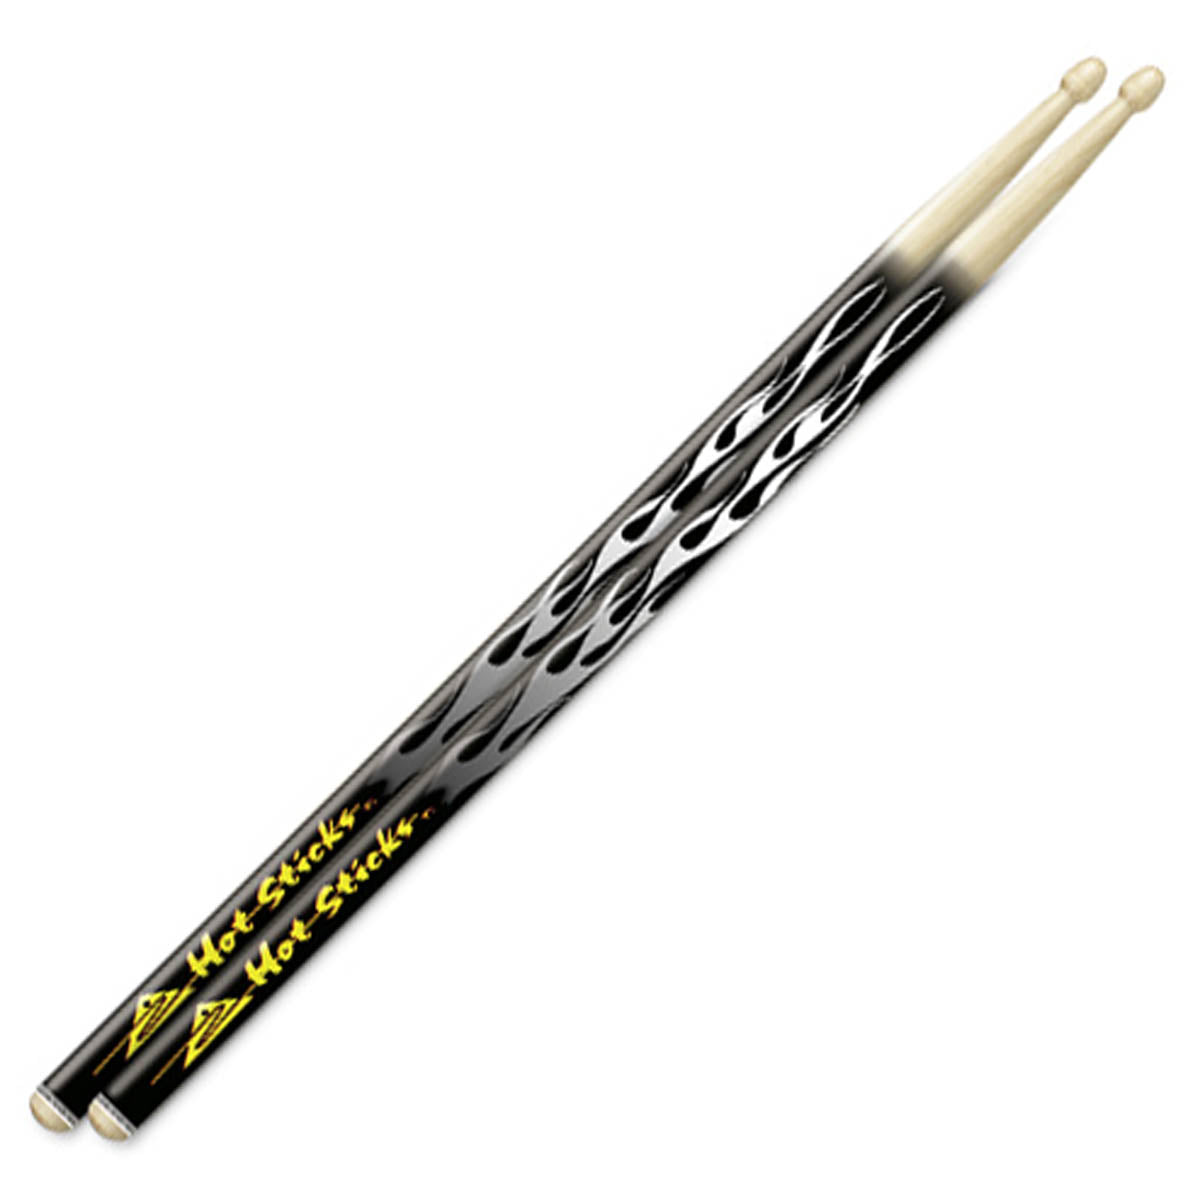 Hot Sticks Artisticks Drum Sticks - Black Flame